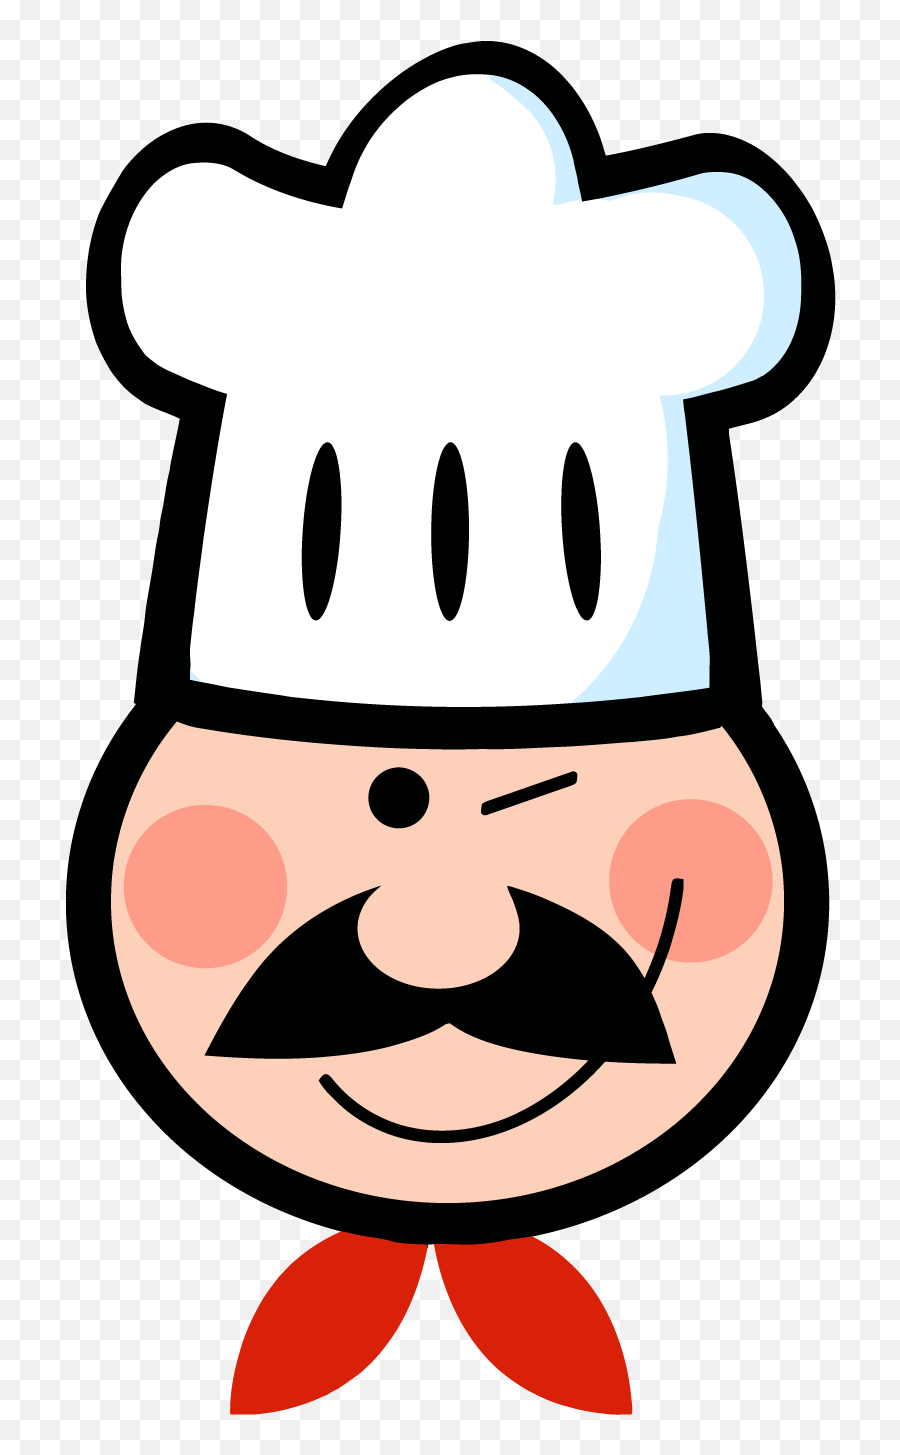 Italian Clipart Head Italian Head Transparent Free For - Cartoon Clipart Chefs Hat Emoji,Italian Chef Kiss Emoji